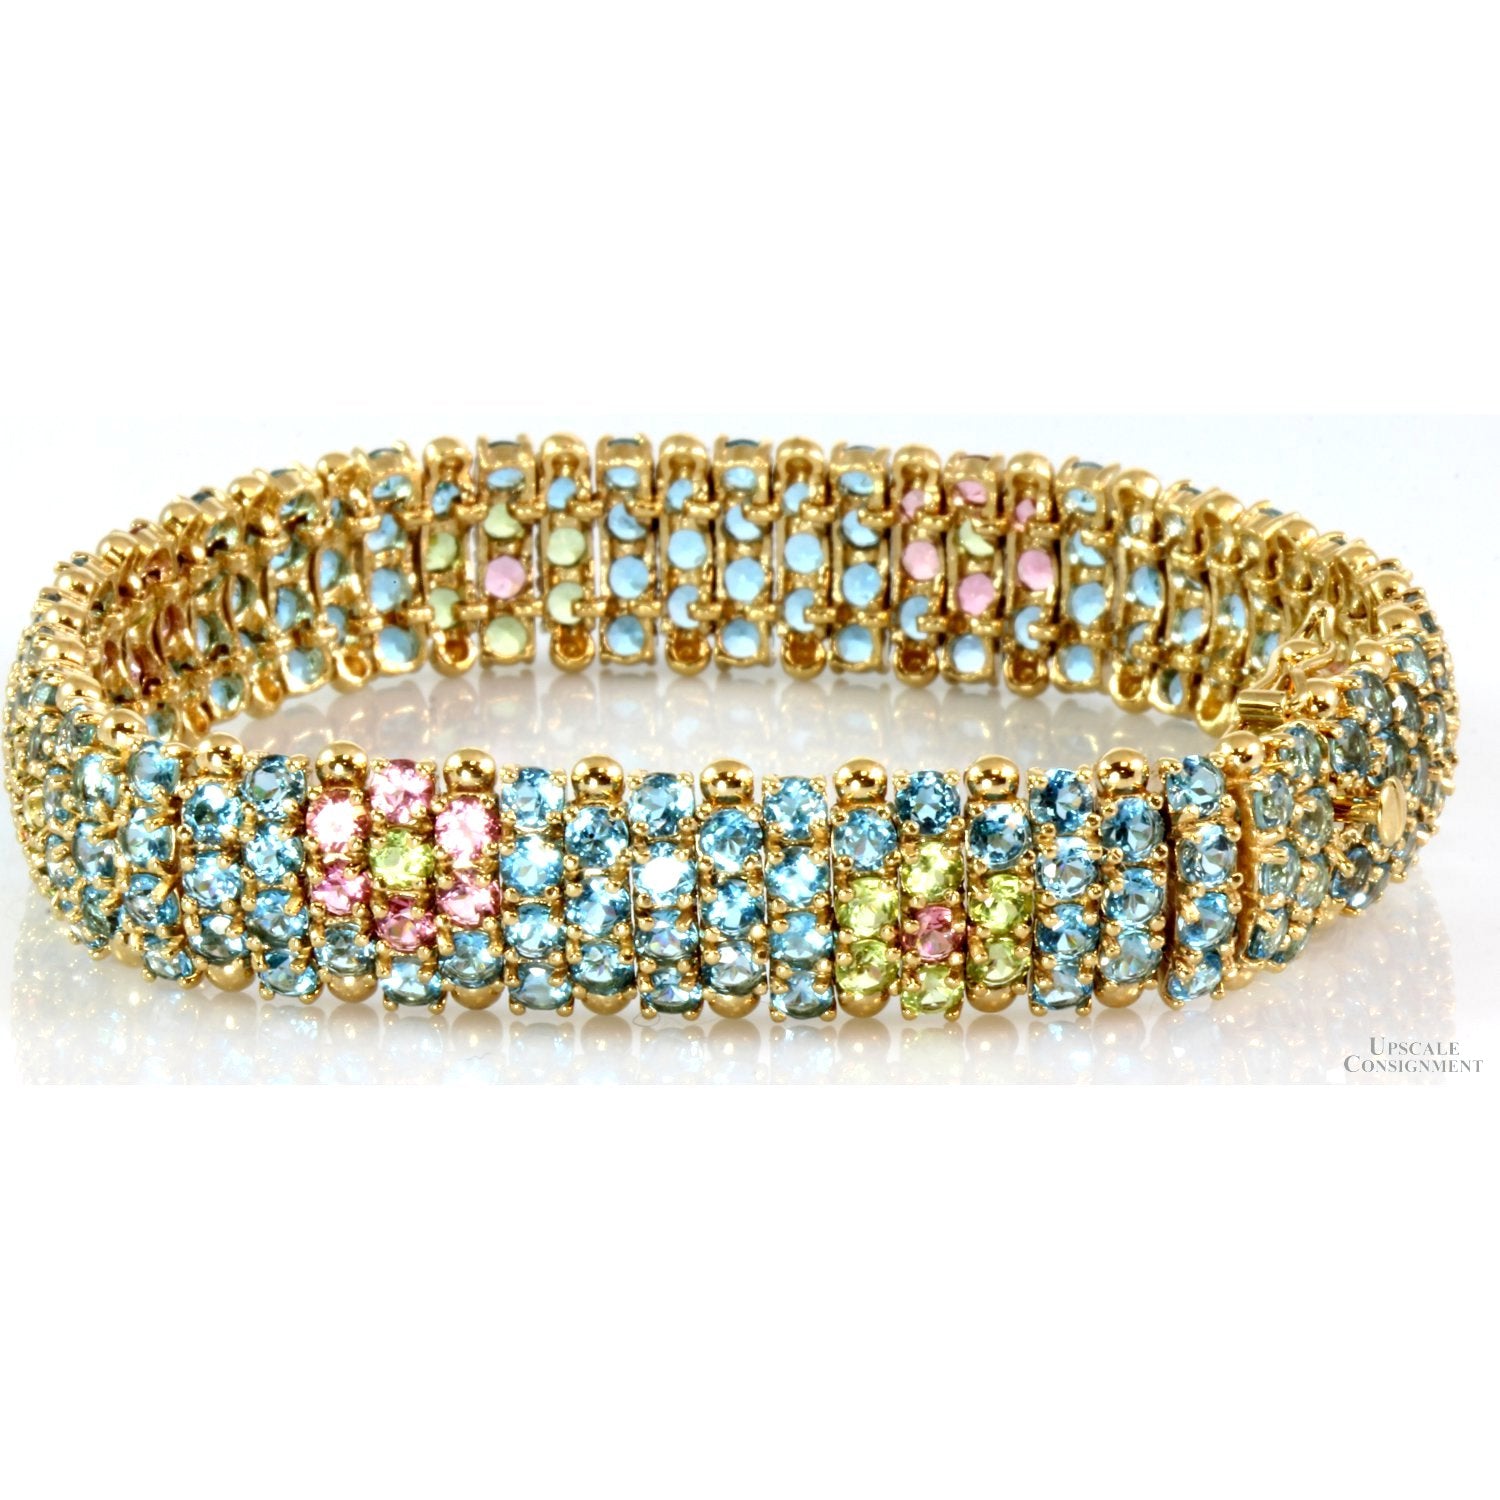 Rainbow Gemstone Bangle Bracelet, 14K Yellow Gold